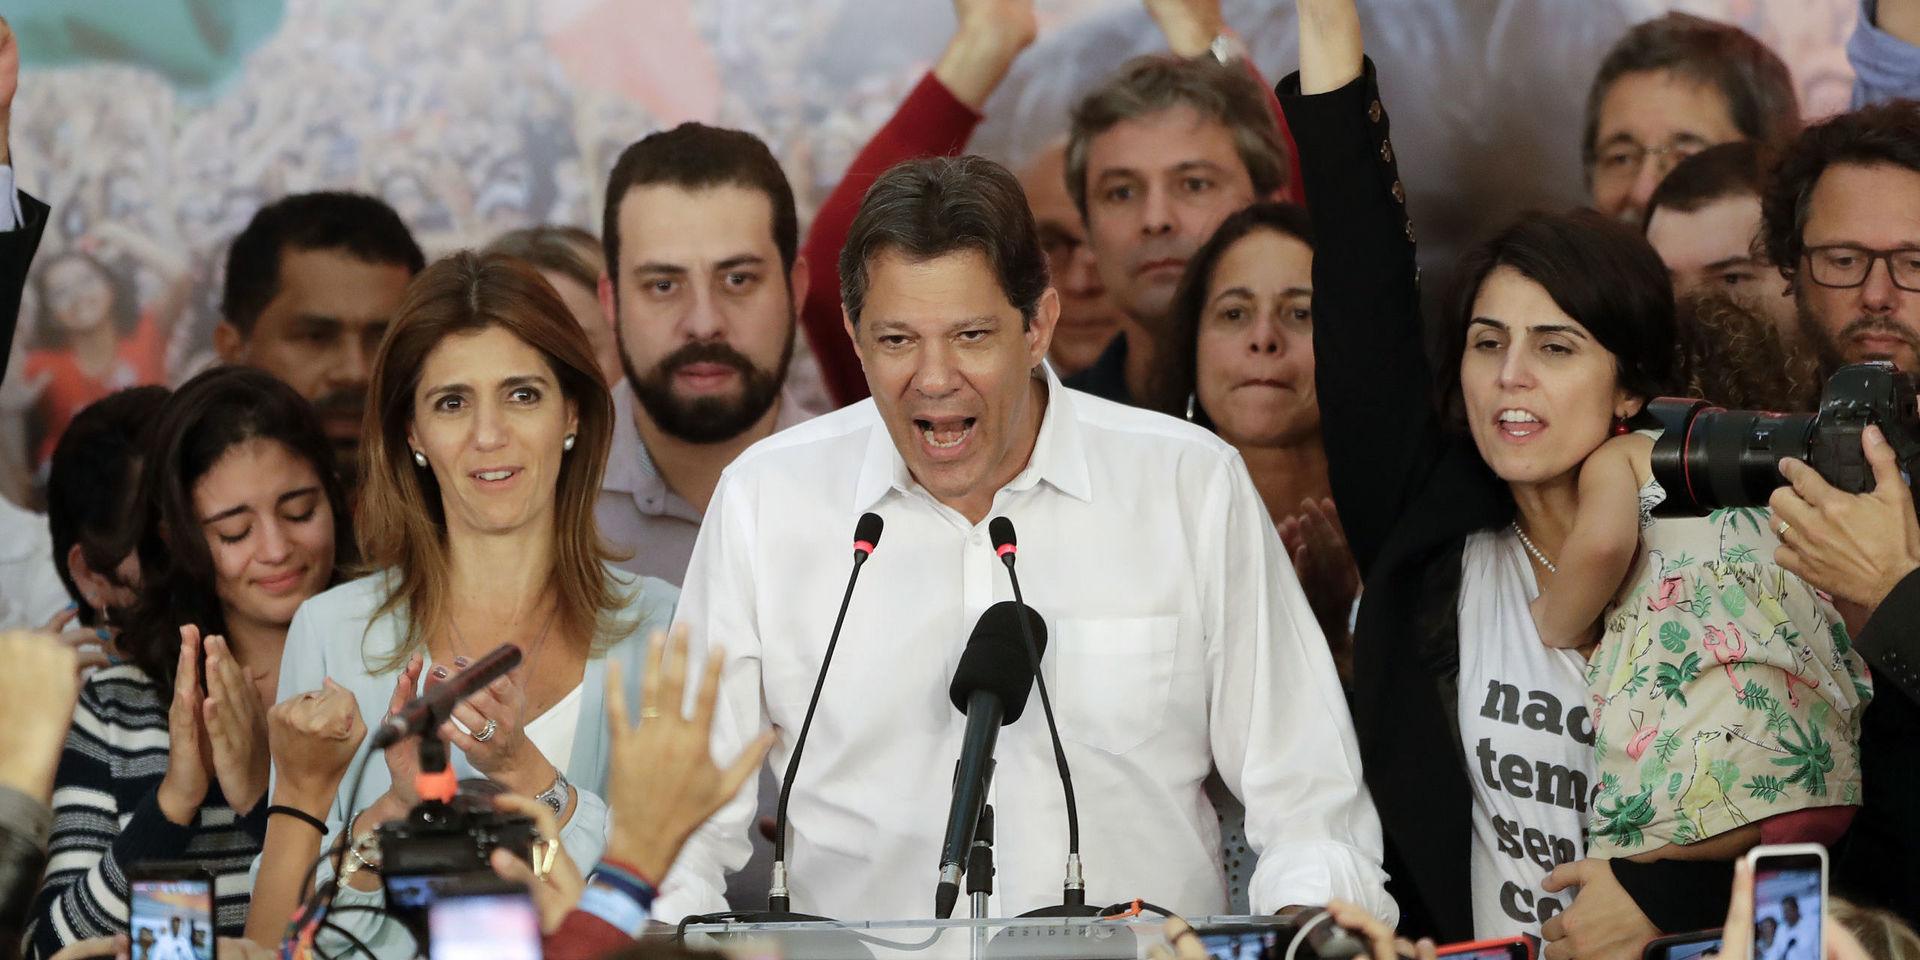 Fernando Haddad under presidentvalskampanjen 2018.